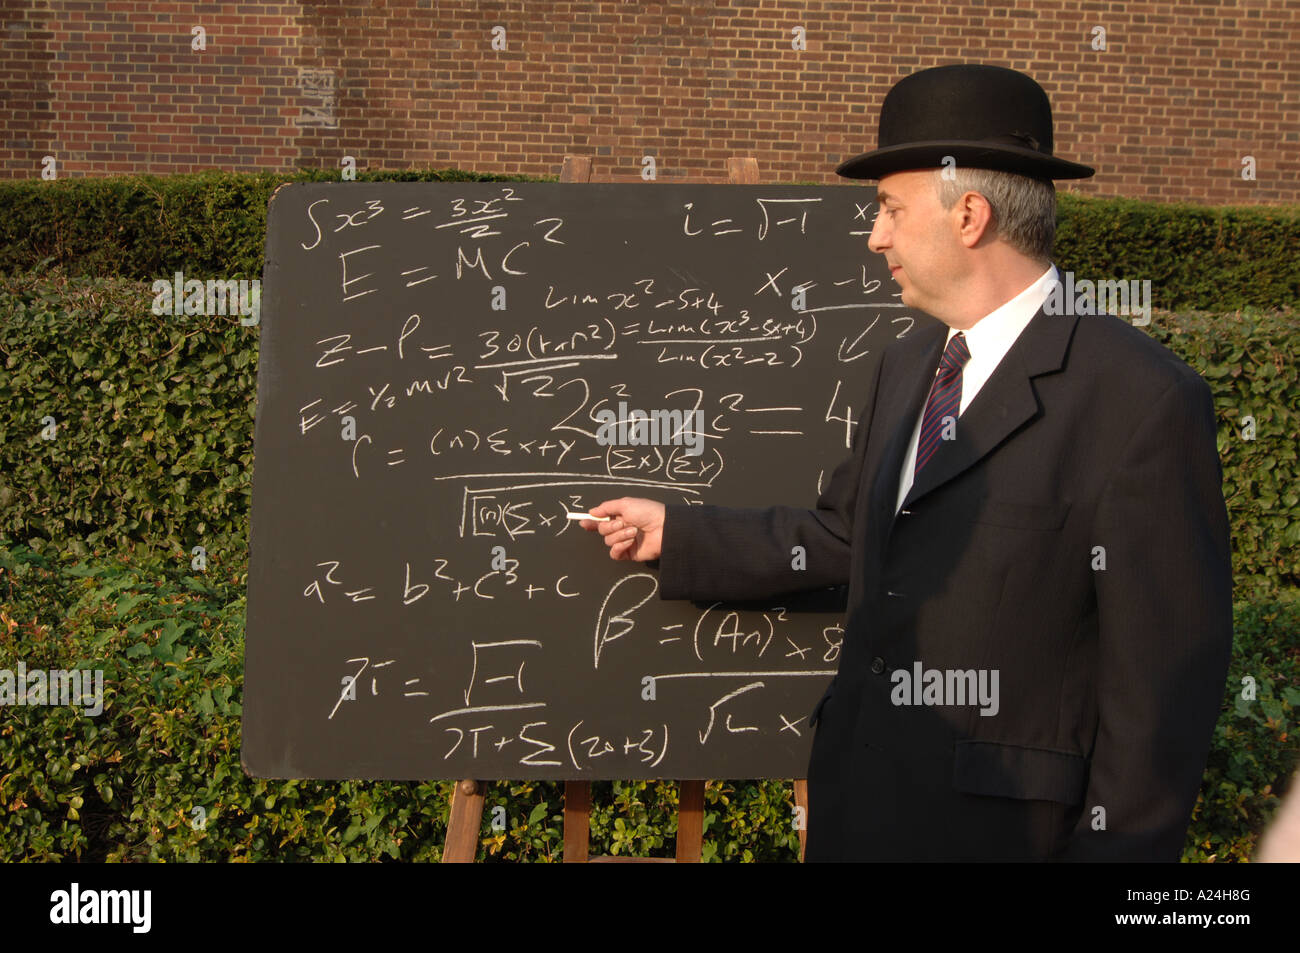 Stadt Gent mit komplizierten mathematischen Formel auf einer Tafel Stockfoto